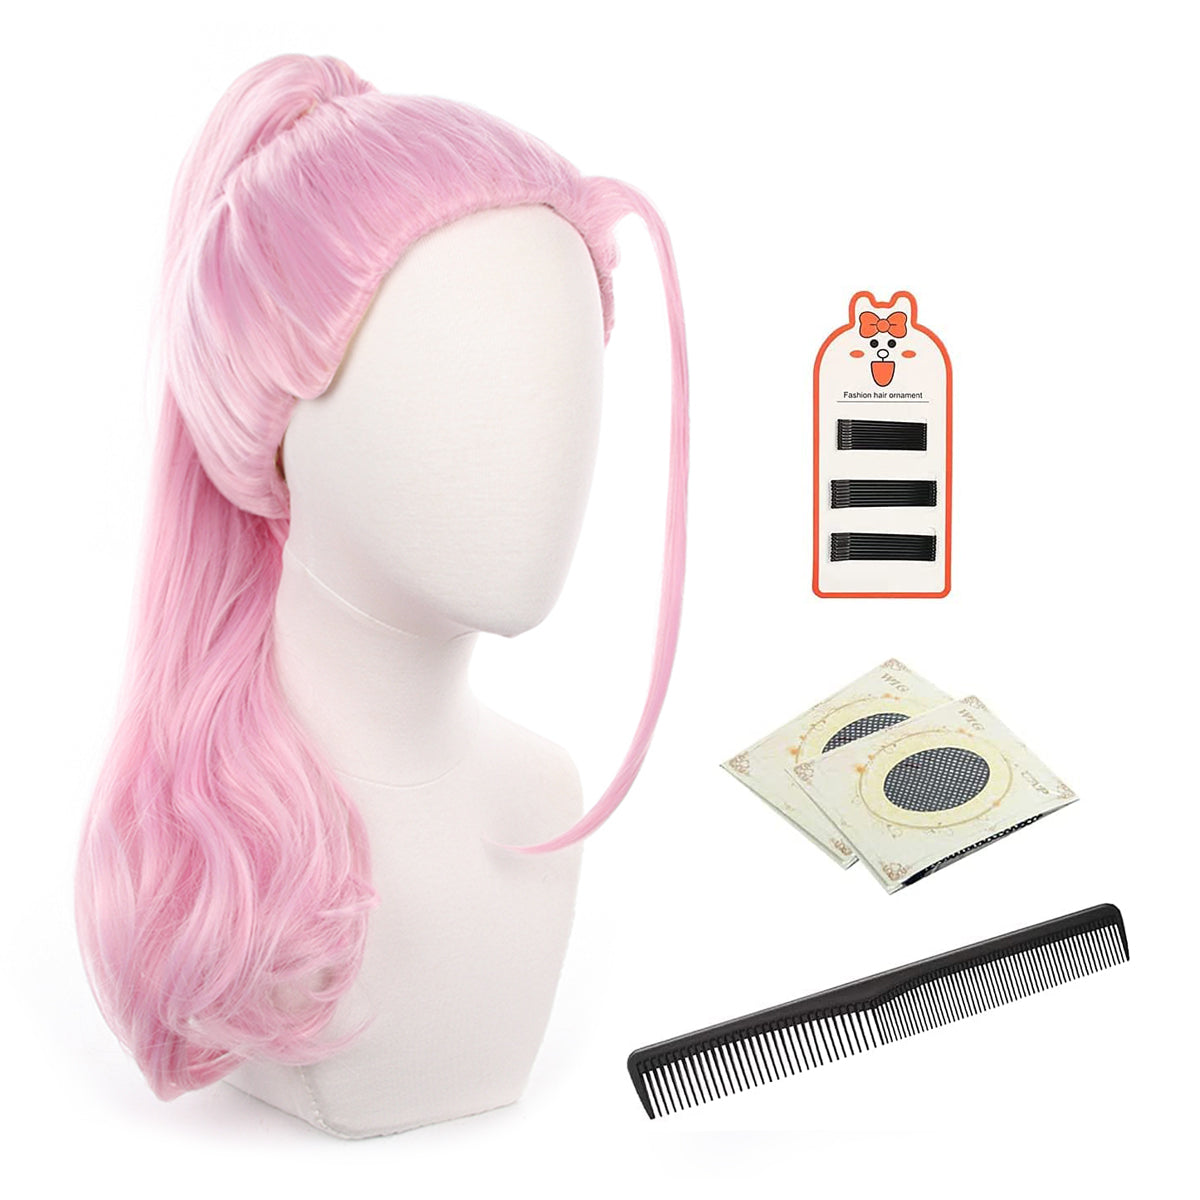 HOLOUN Universal Wig Haruchiyo Sanzu Exhibition Suit Anime Cosplay Rose Net Synthetic Fiber Adjustable Size